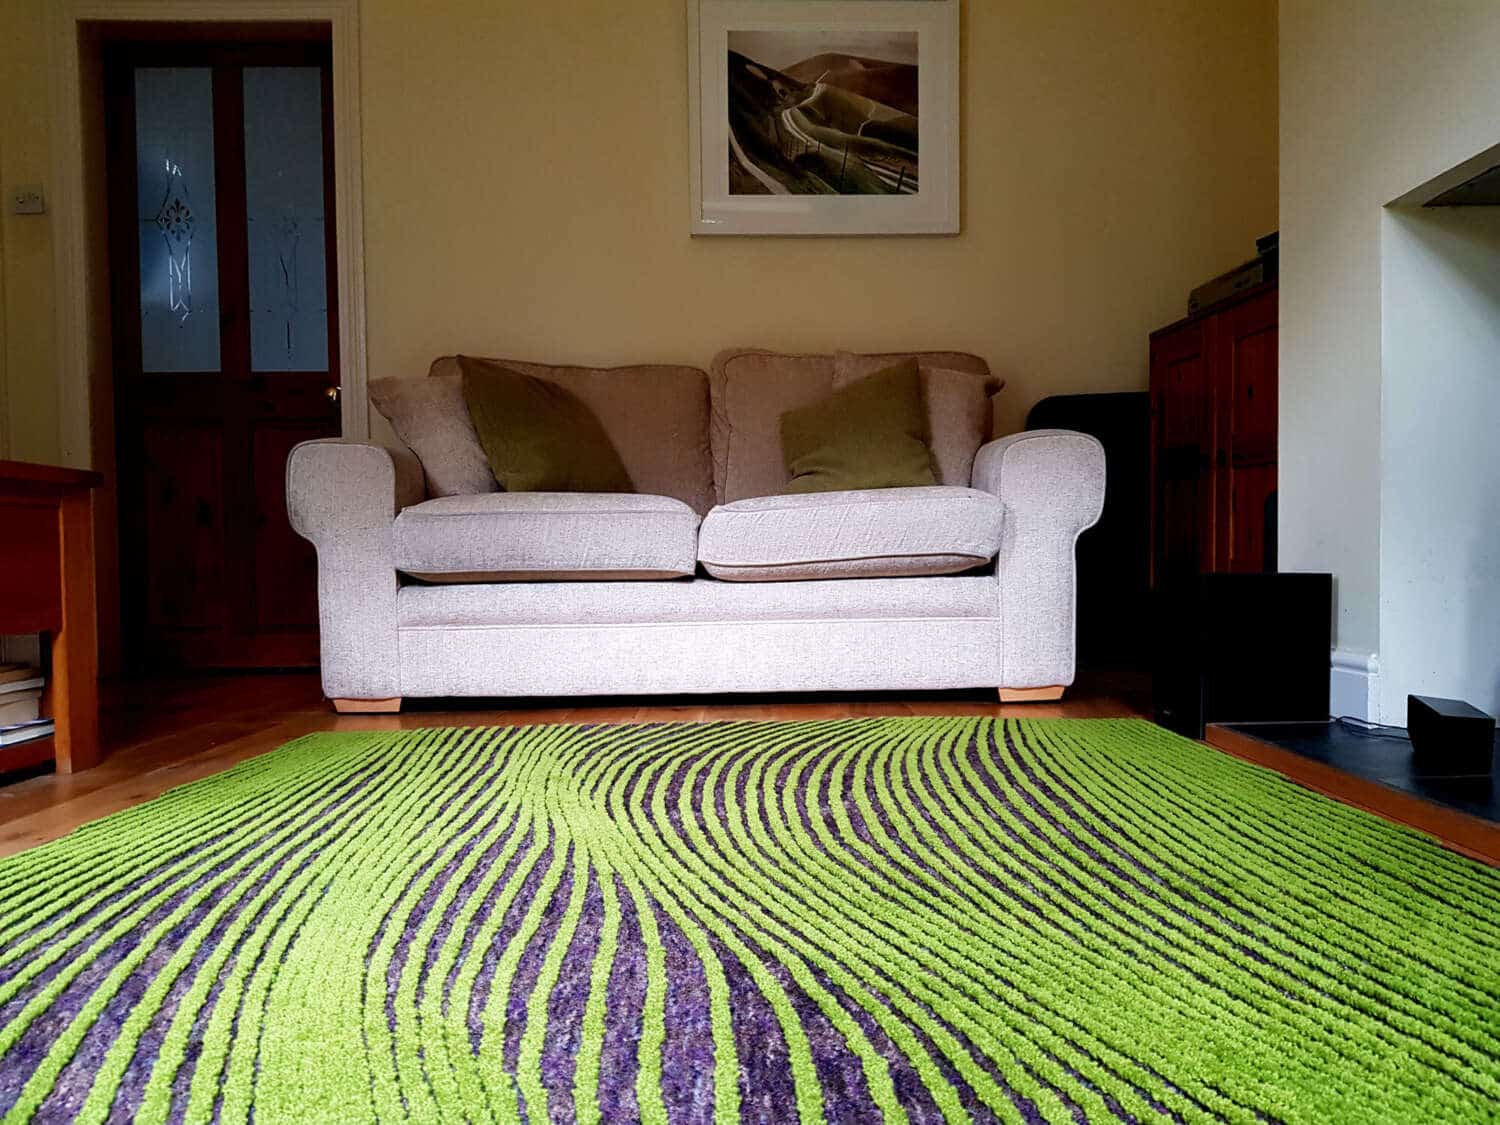 Cách decor không gian của bạn xanh tươi hơn chỉ bằng một tấm thảm trải nhà phong cách đồng quê, xanh mướt thảm cỏ.